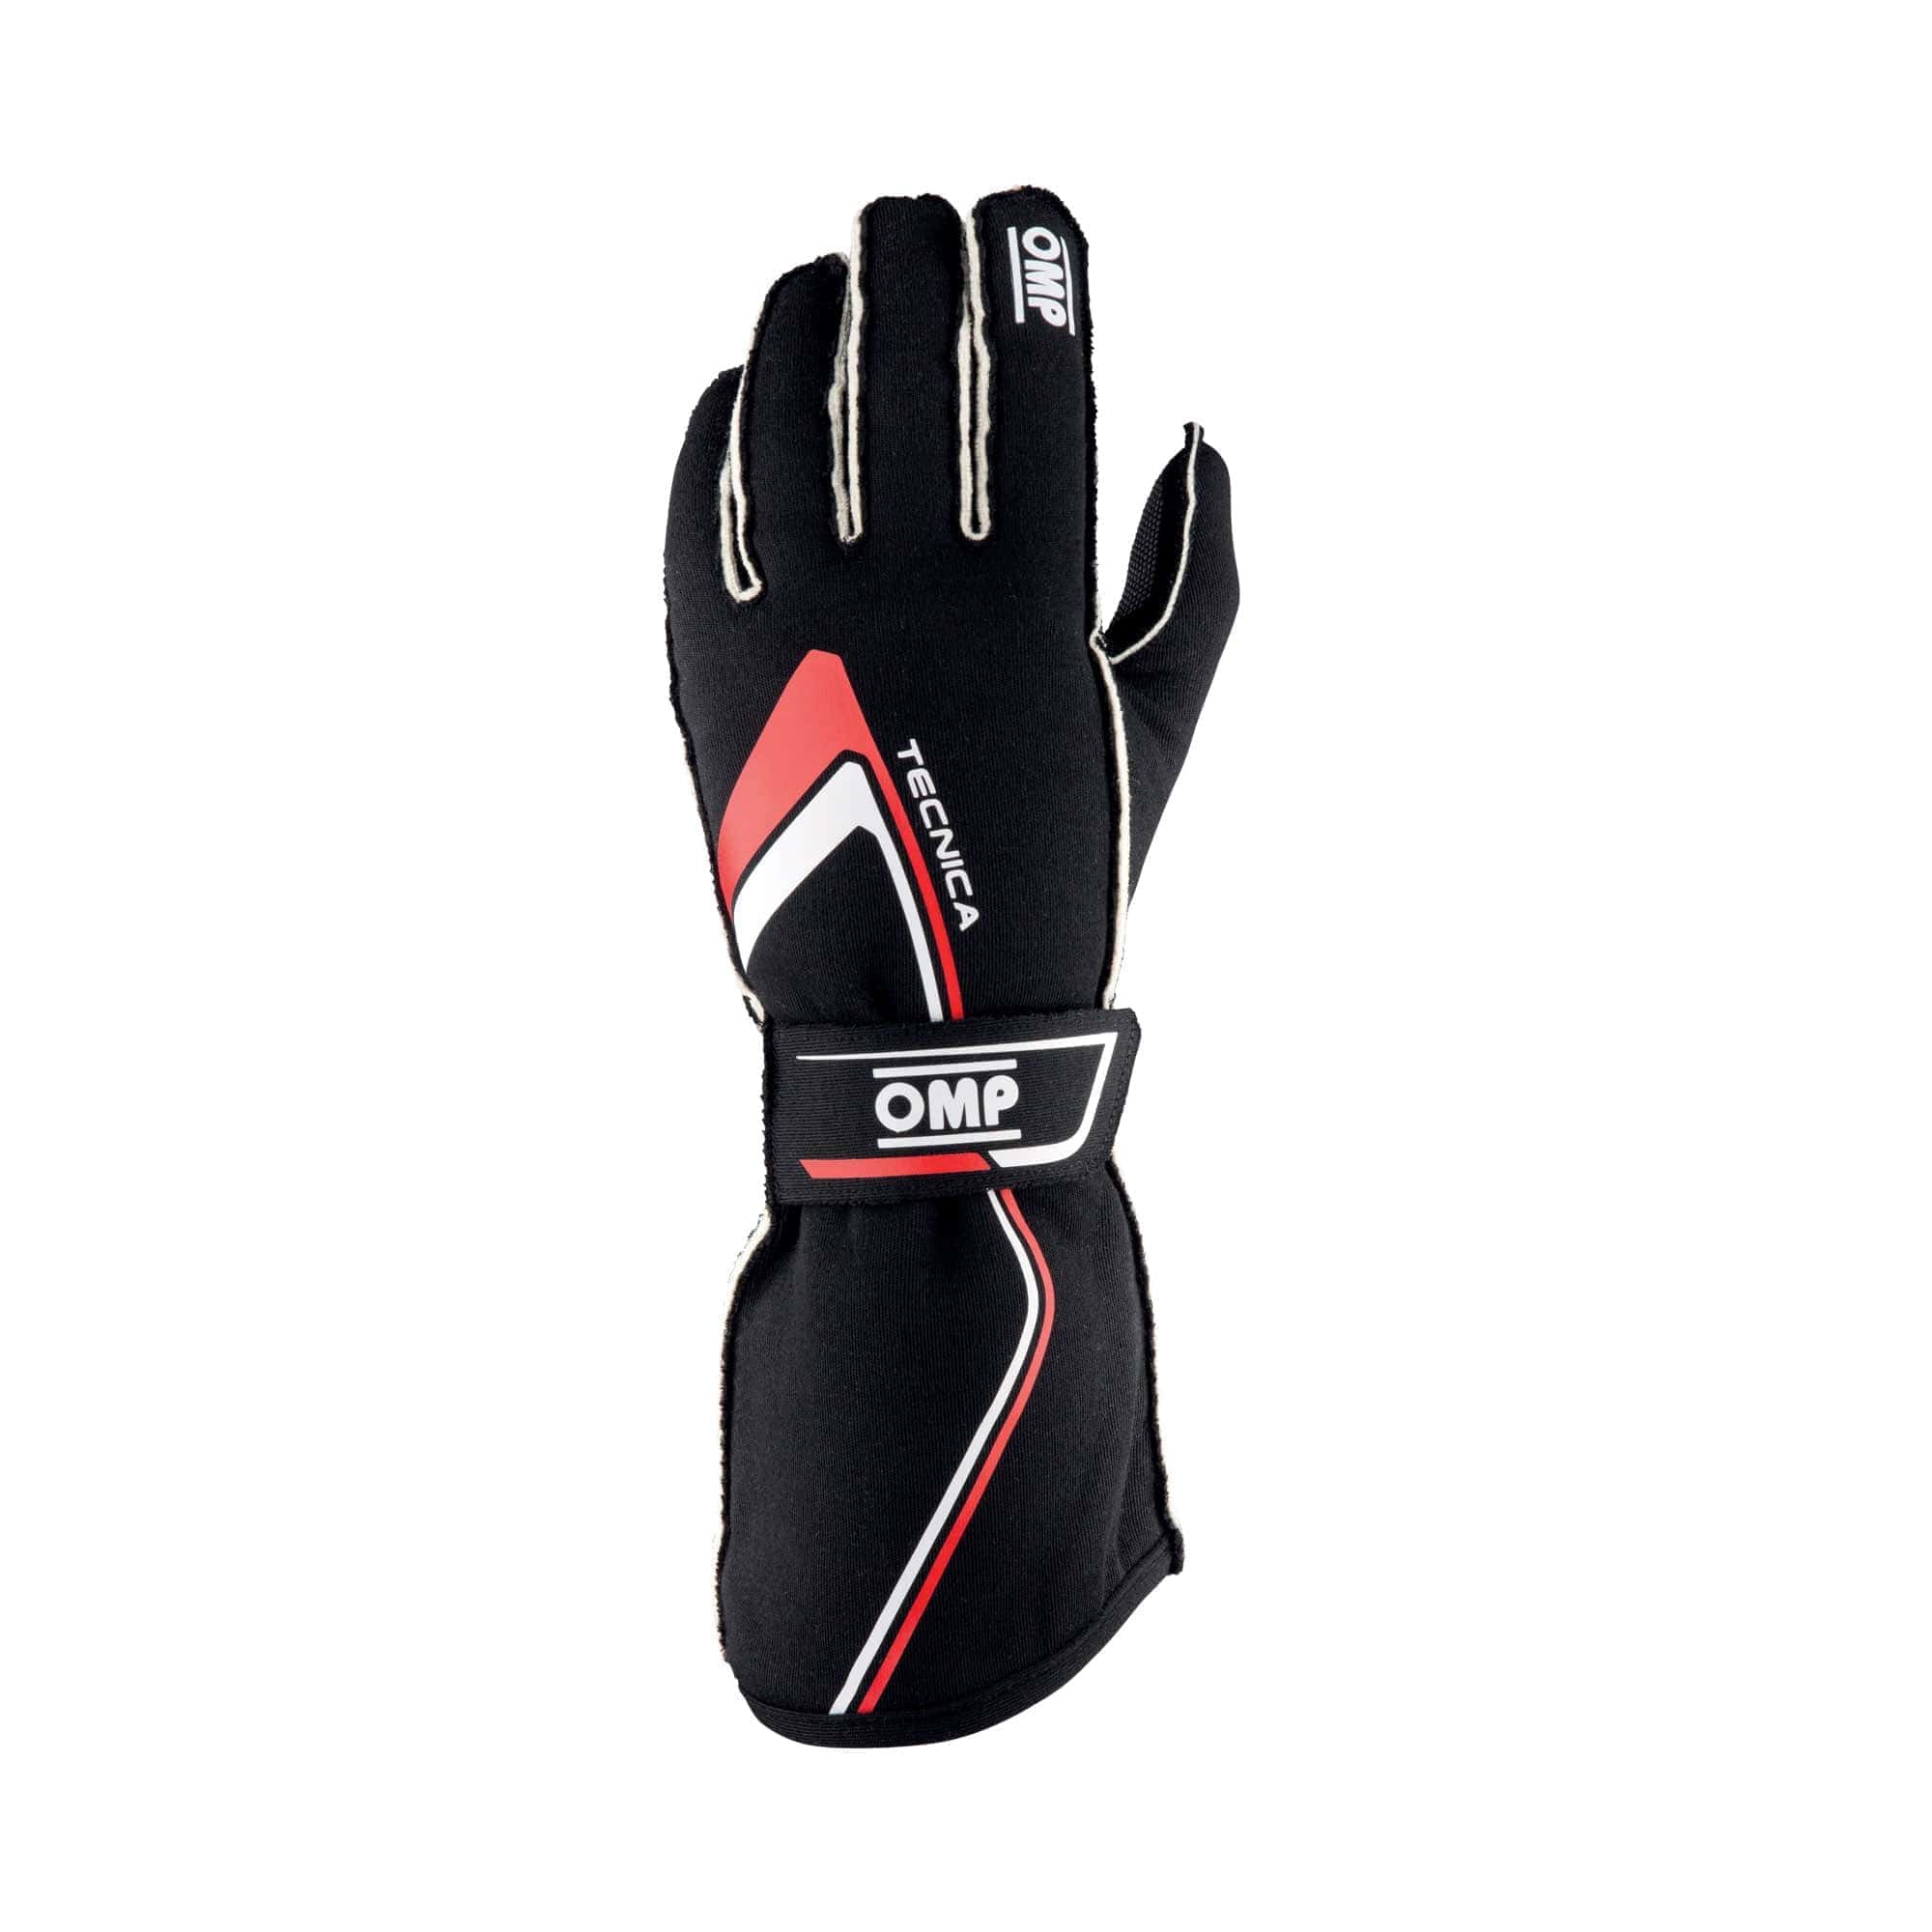 Guanti-Tecnica-Gloves-Omp-Nero-Rosso-IB-772-NR